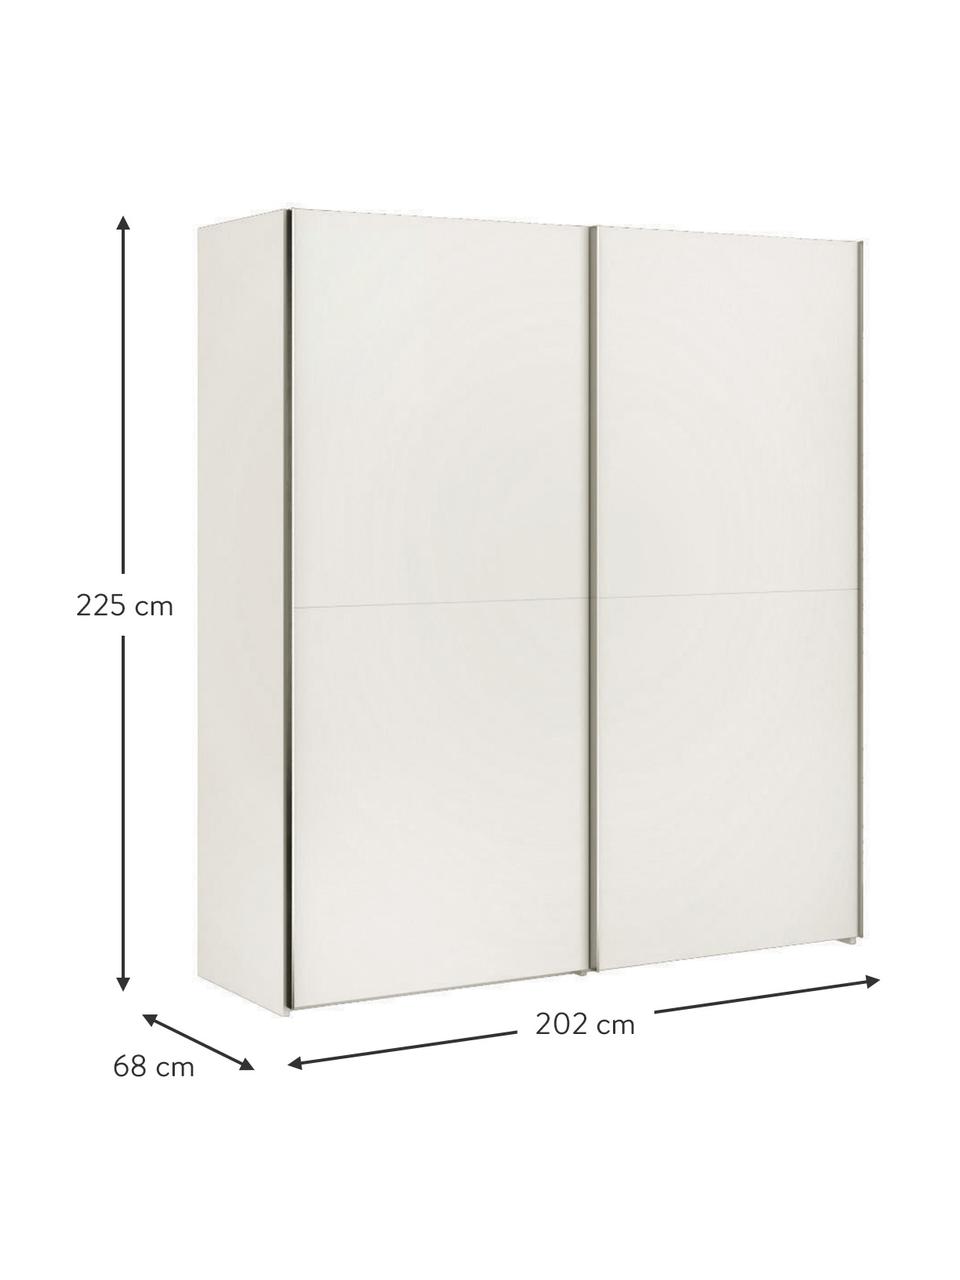 Schuifdeurkast Oliver met 2 deuren, inclusief montageservice, Frame: panelen op houtbasis, gel, Wit, 202 x 225 cm